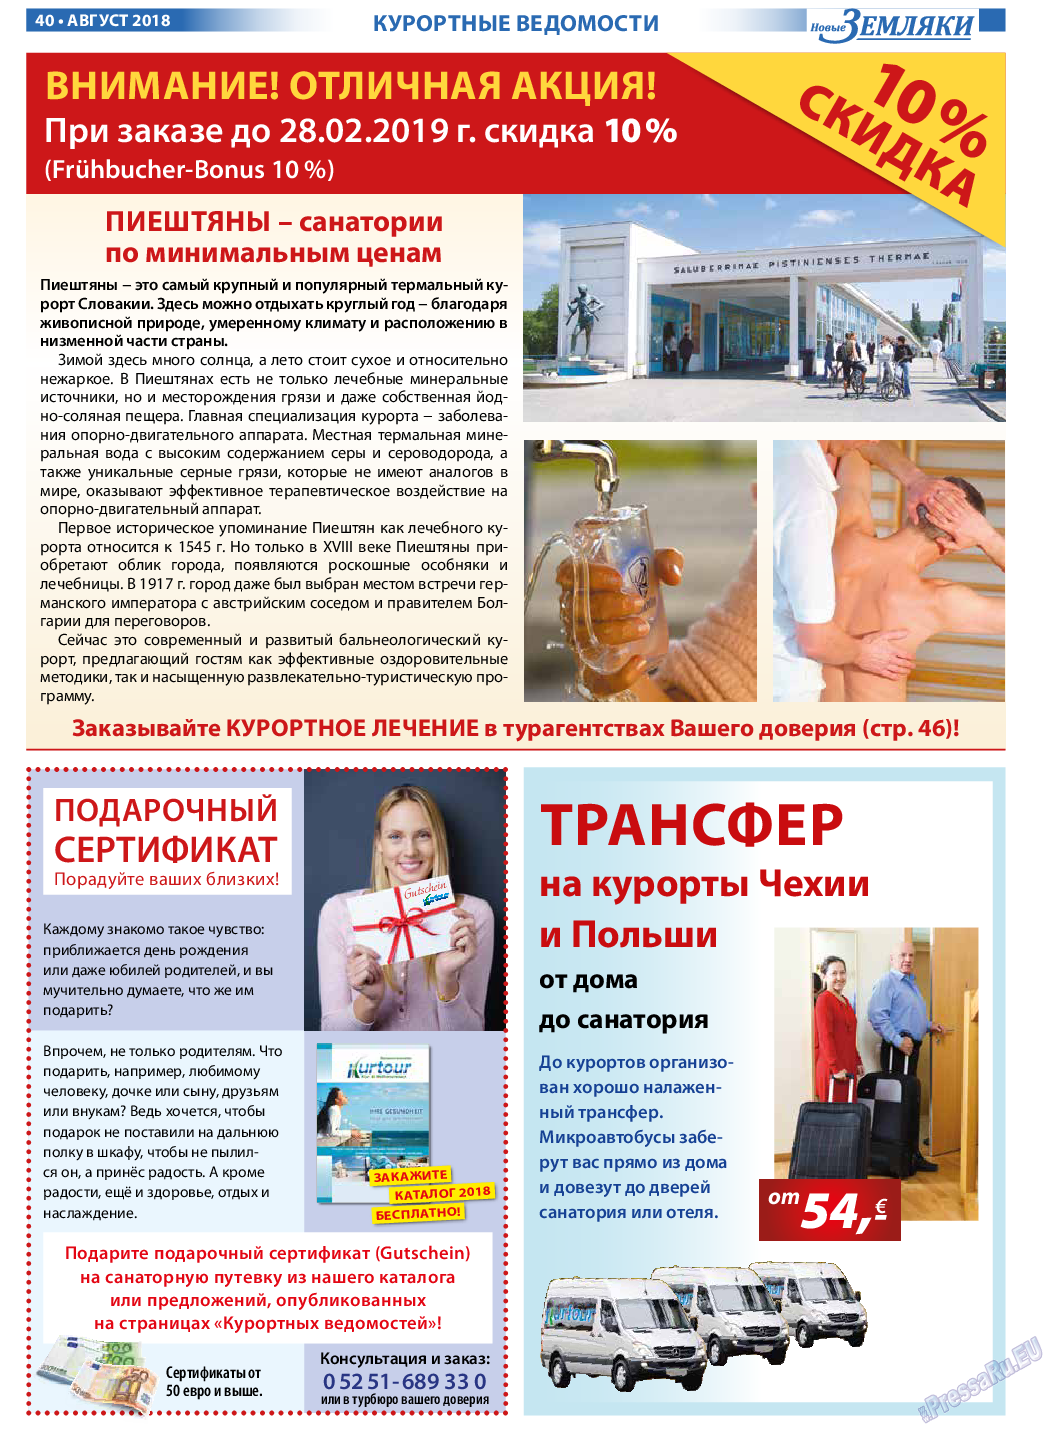 Новые Земляки, газета. 2018 №8 стр.40